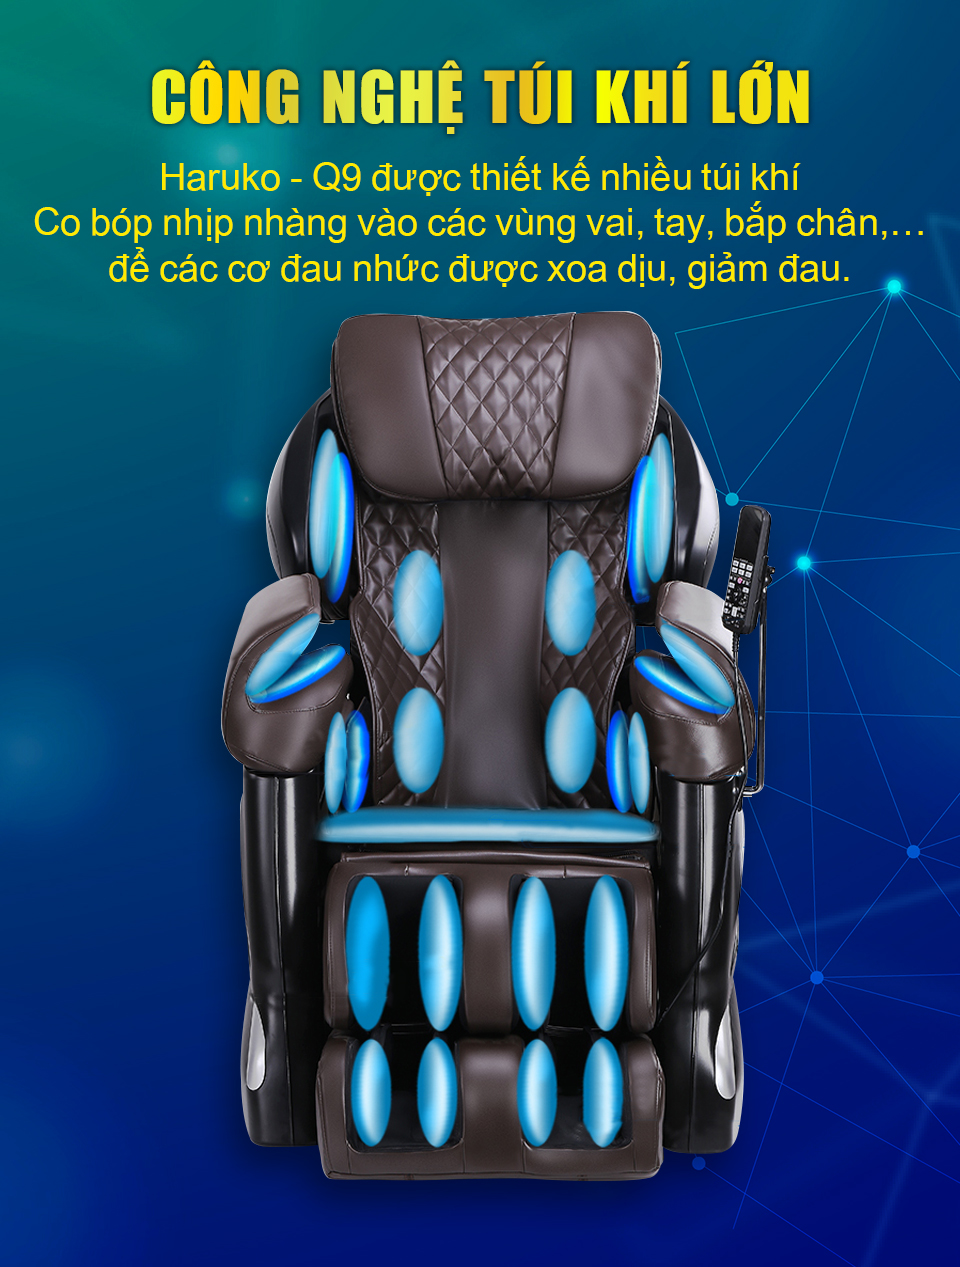 Công nghệ túi khí trên ghế massage